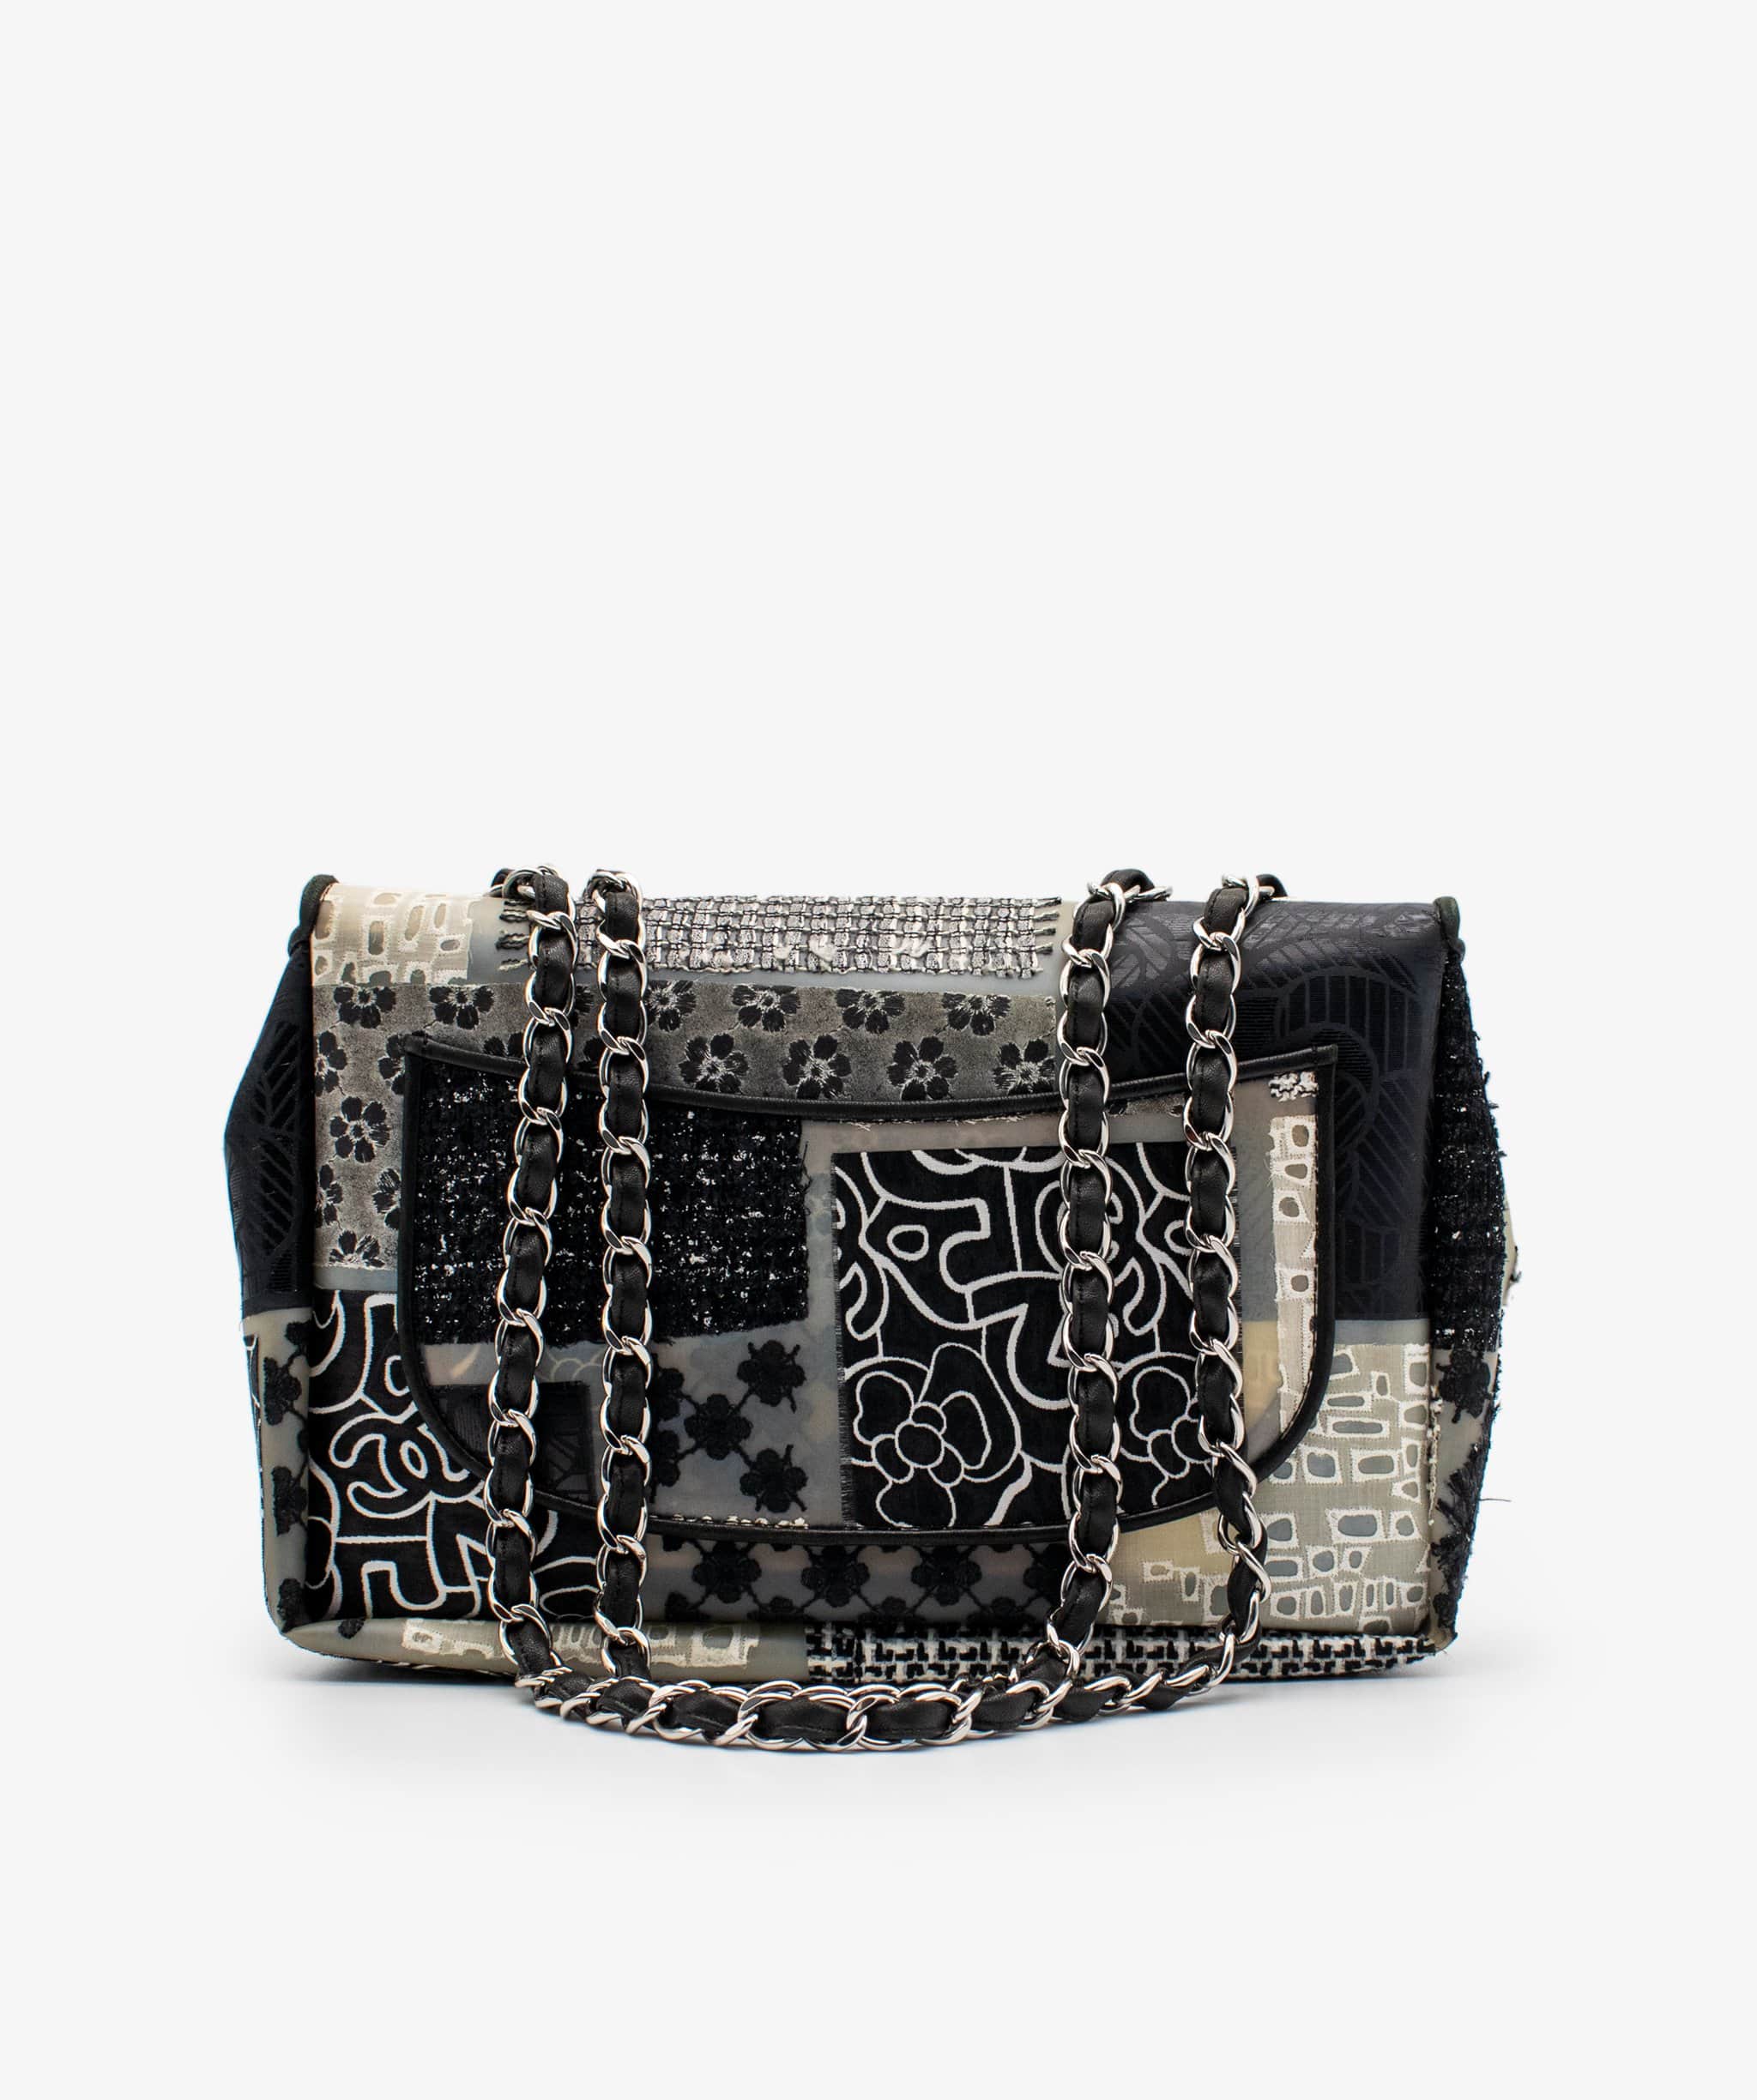 Chanel Chanel Jumbo Patchwork Flap Bag